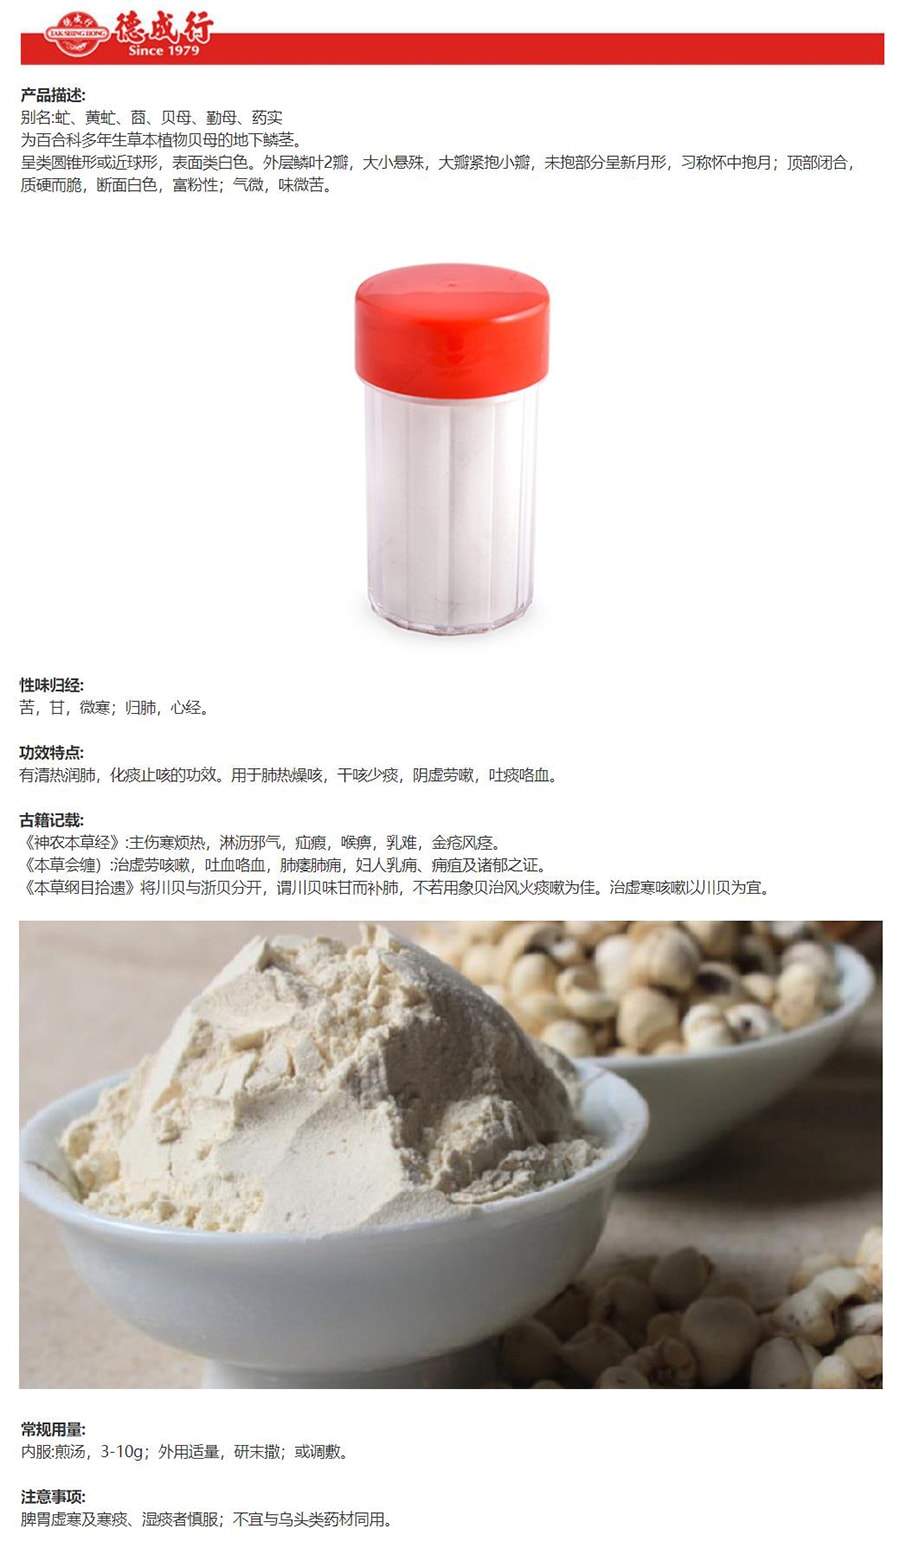 Tak Shing Hong Fritillaria Powder 75.4g